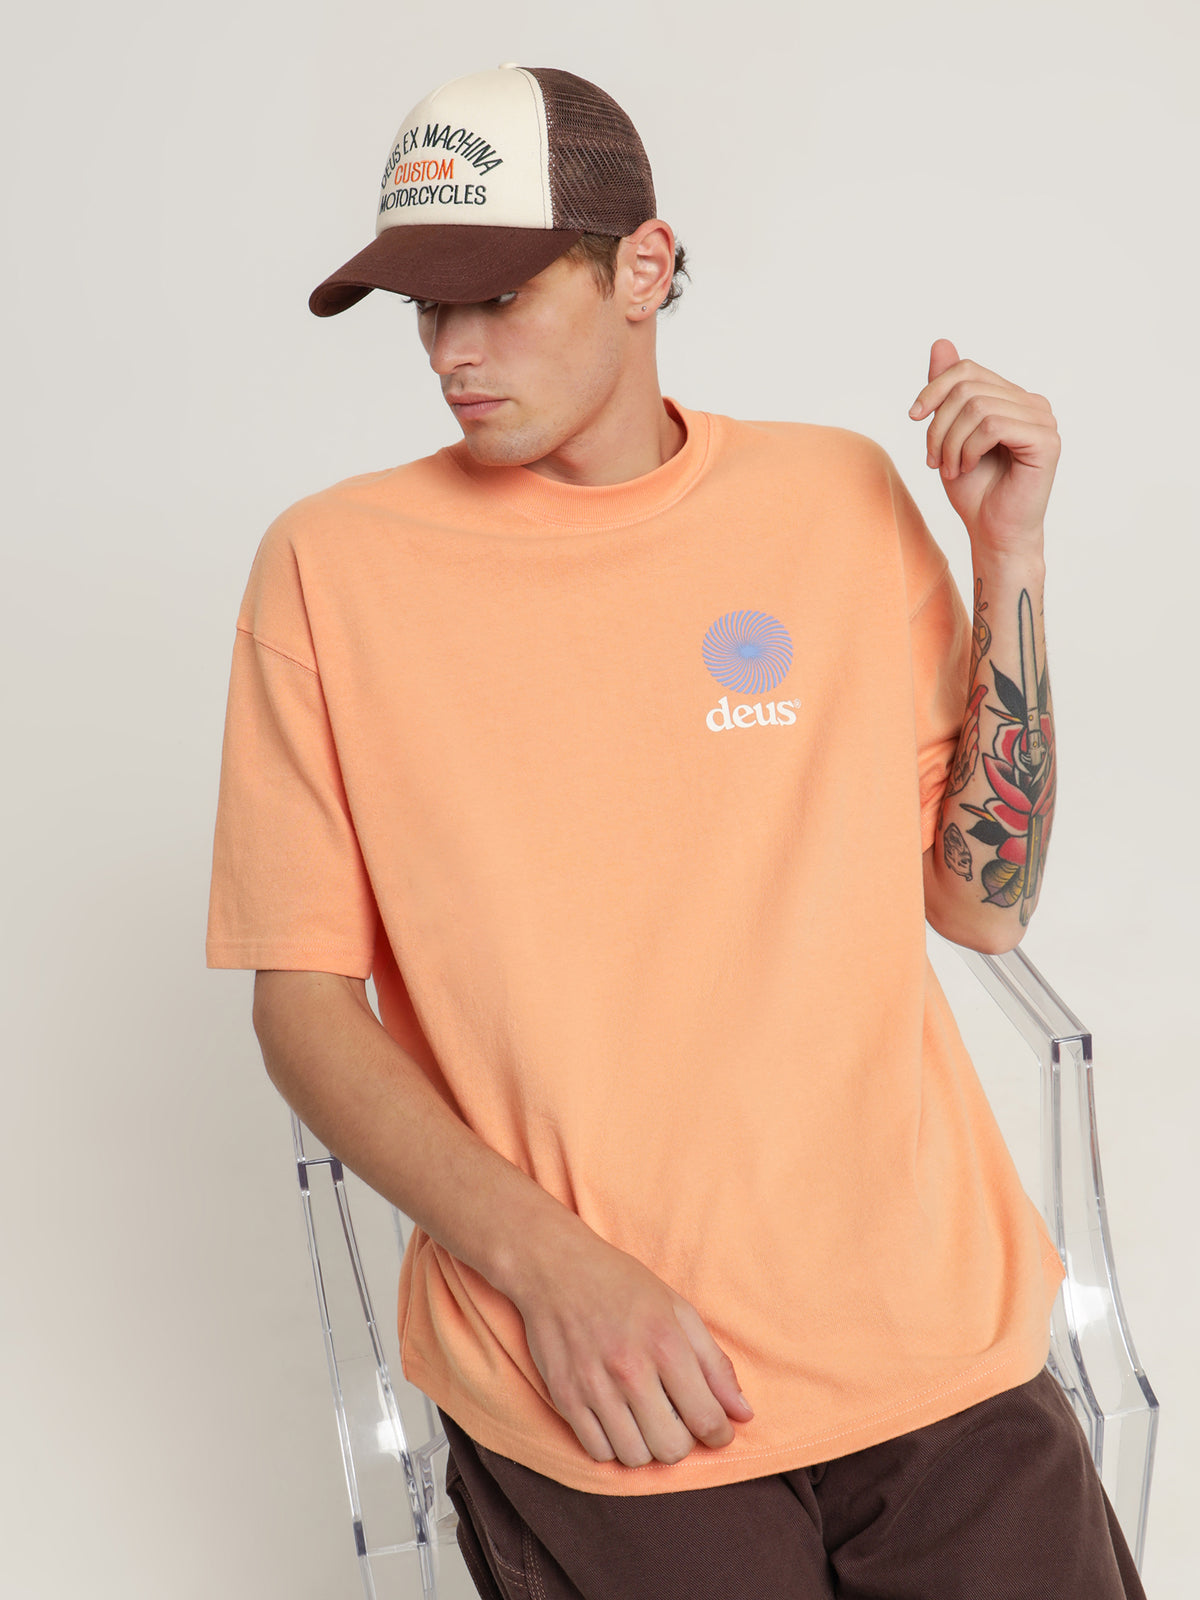 Strata T-Shirt in Sunkist Orange